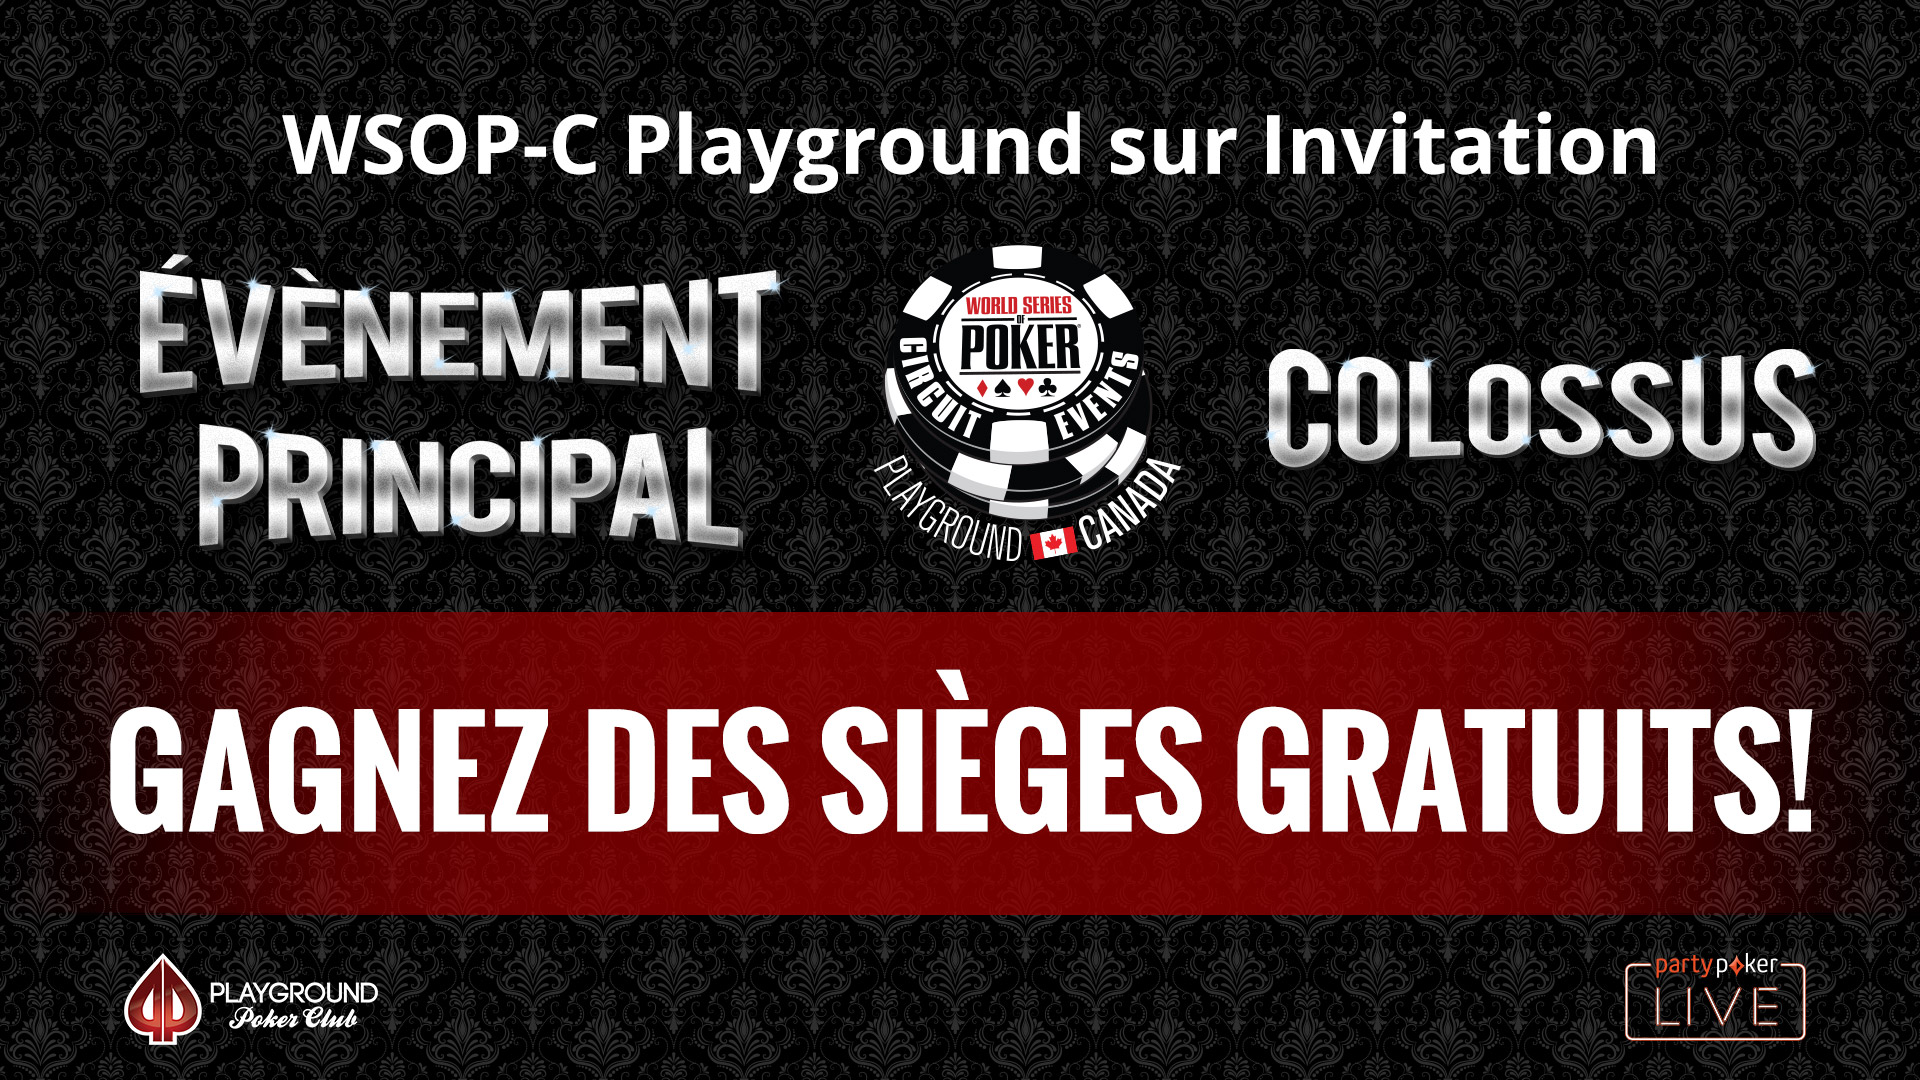 WSOP-C Playground sur Invitation – Sièges gratuits!